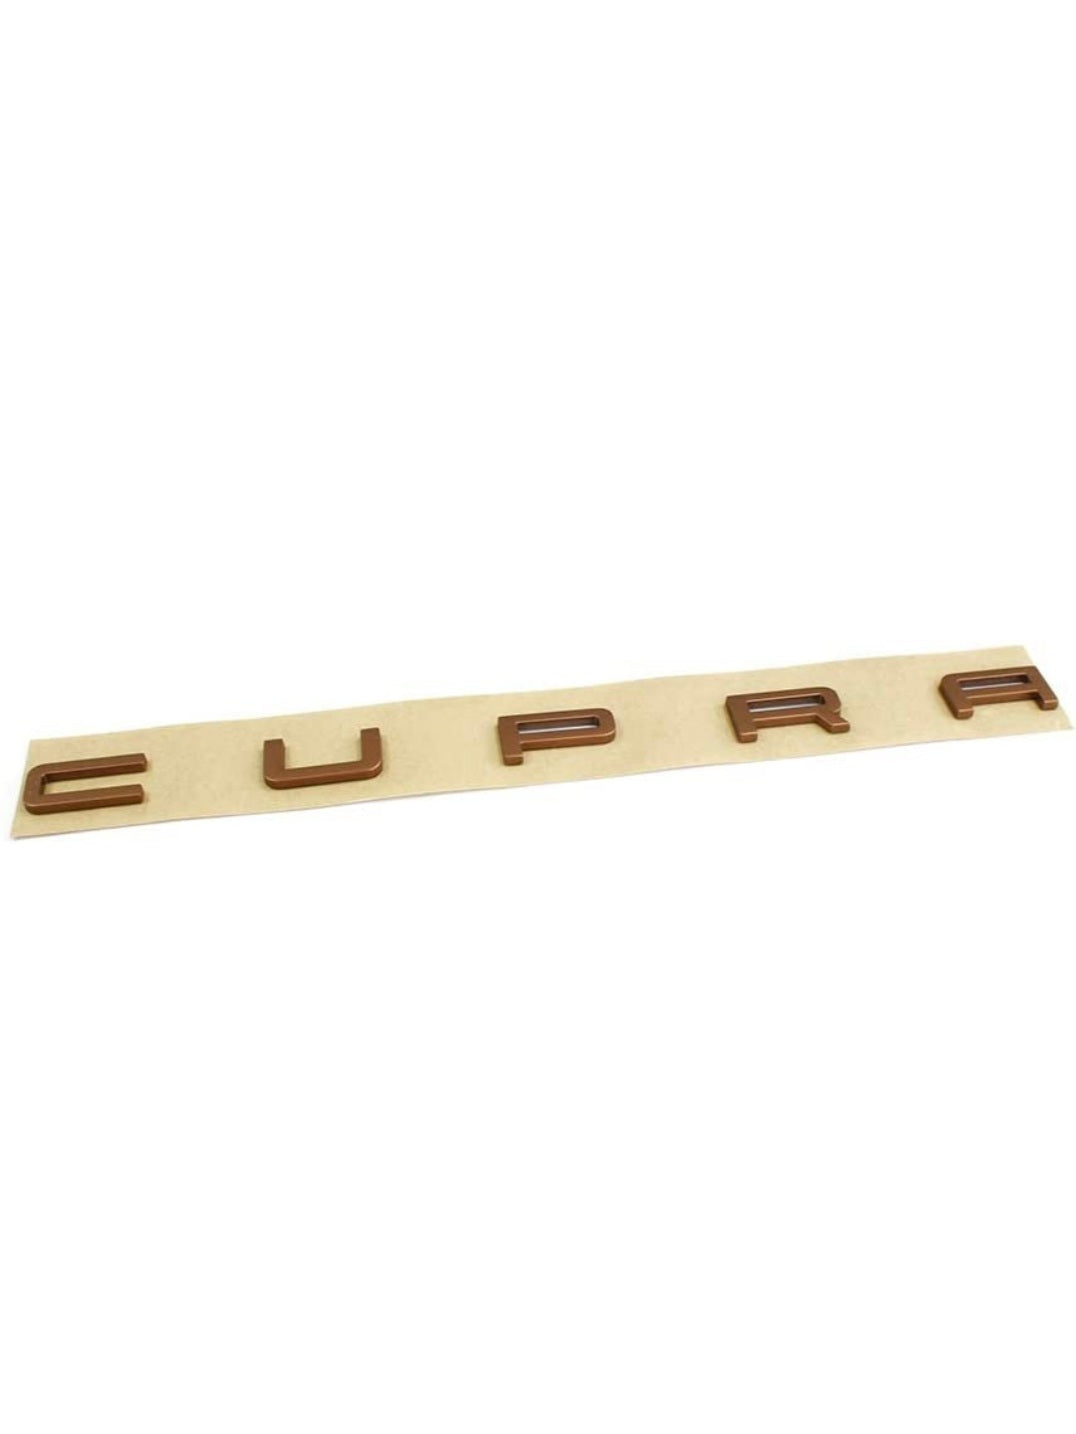 Original Cupra lettering tailgate in copper